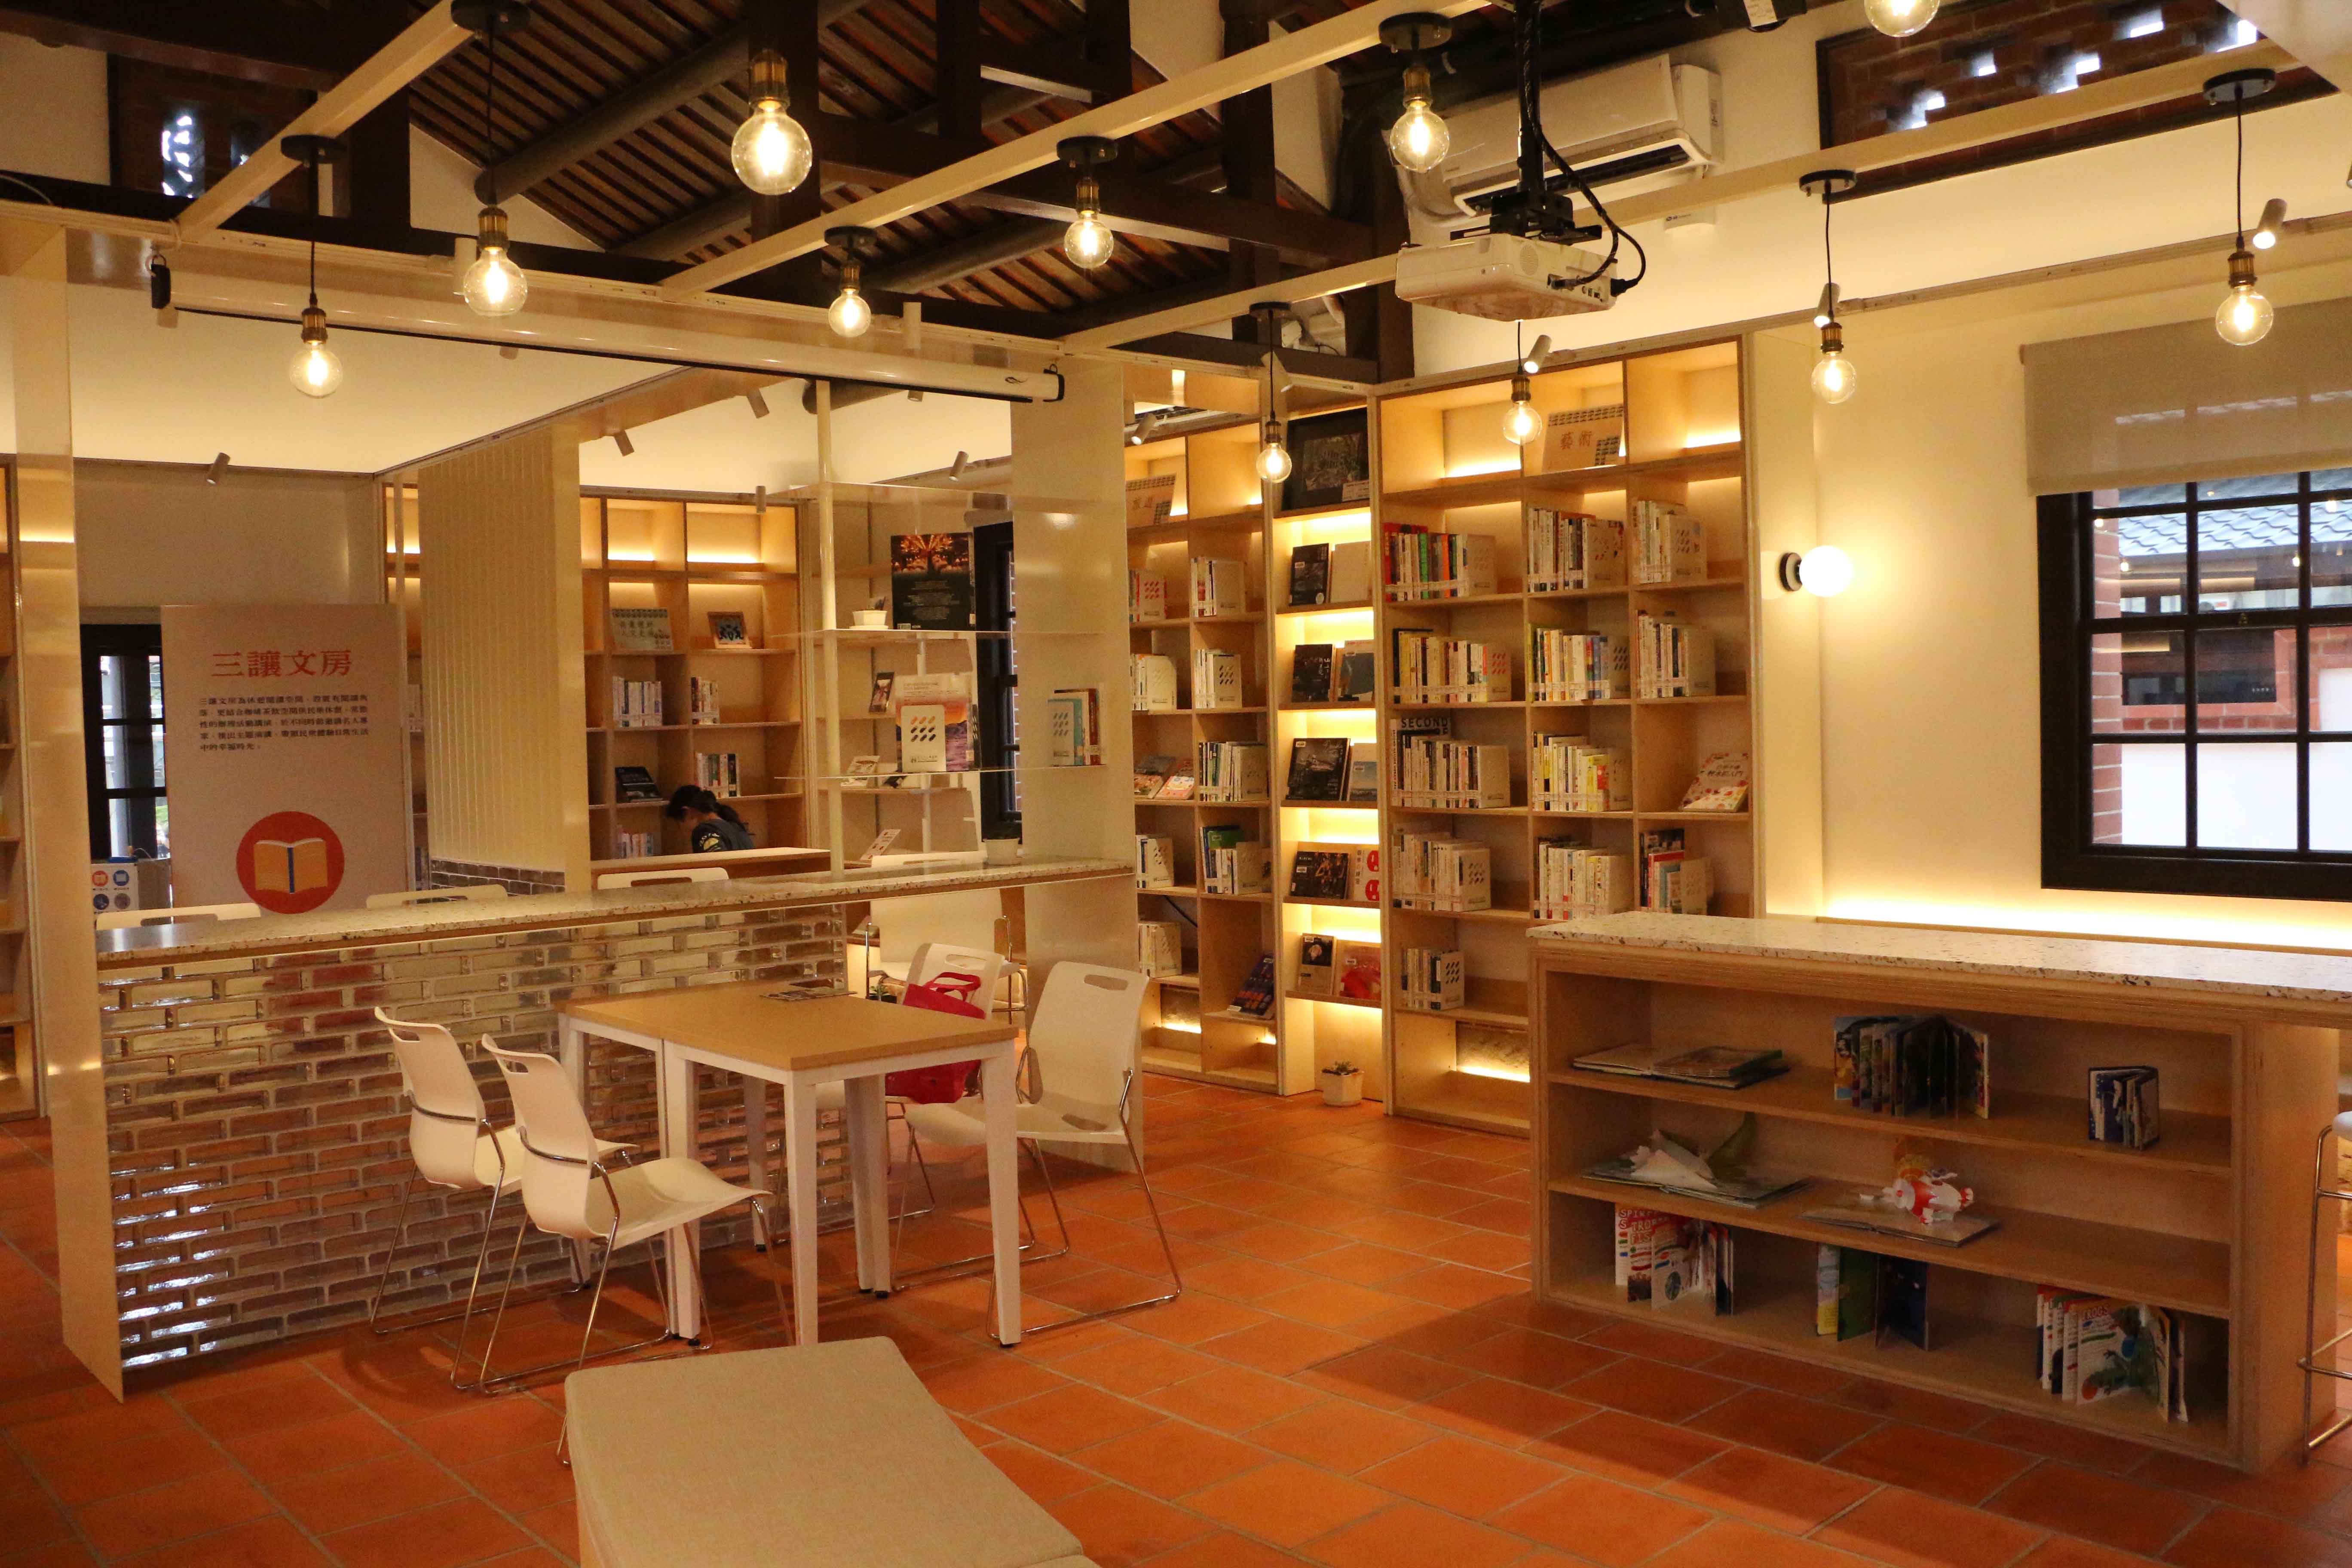 五股守讓堂內的「三讓文堂」為休憩閱讀空間，更結合咖啡茶飲空間供民眾閱讀休憩